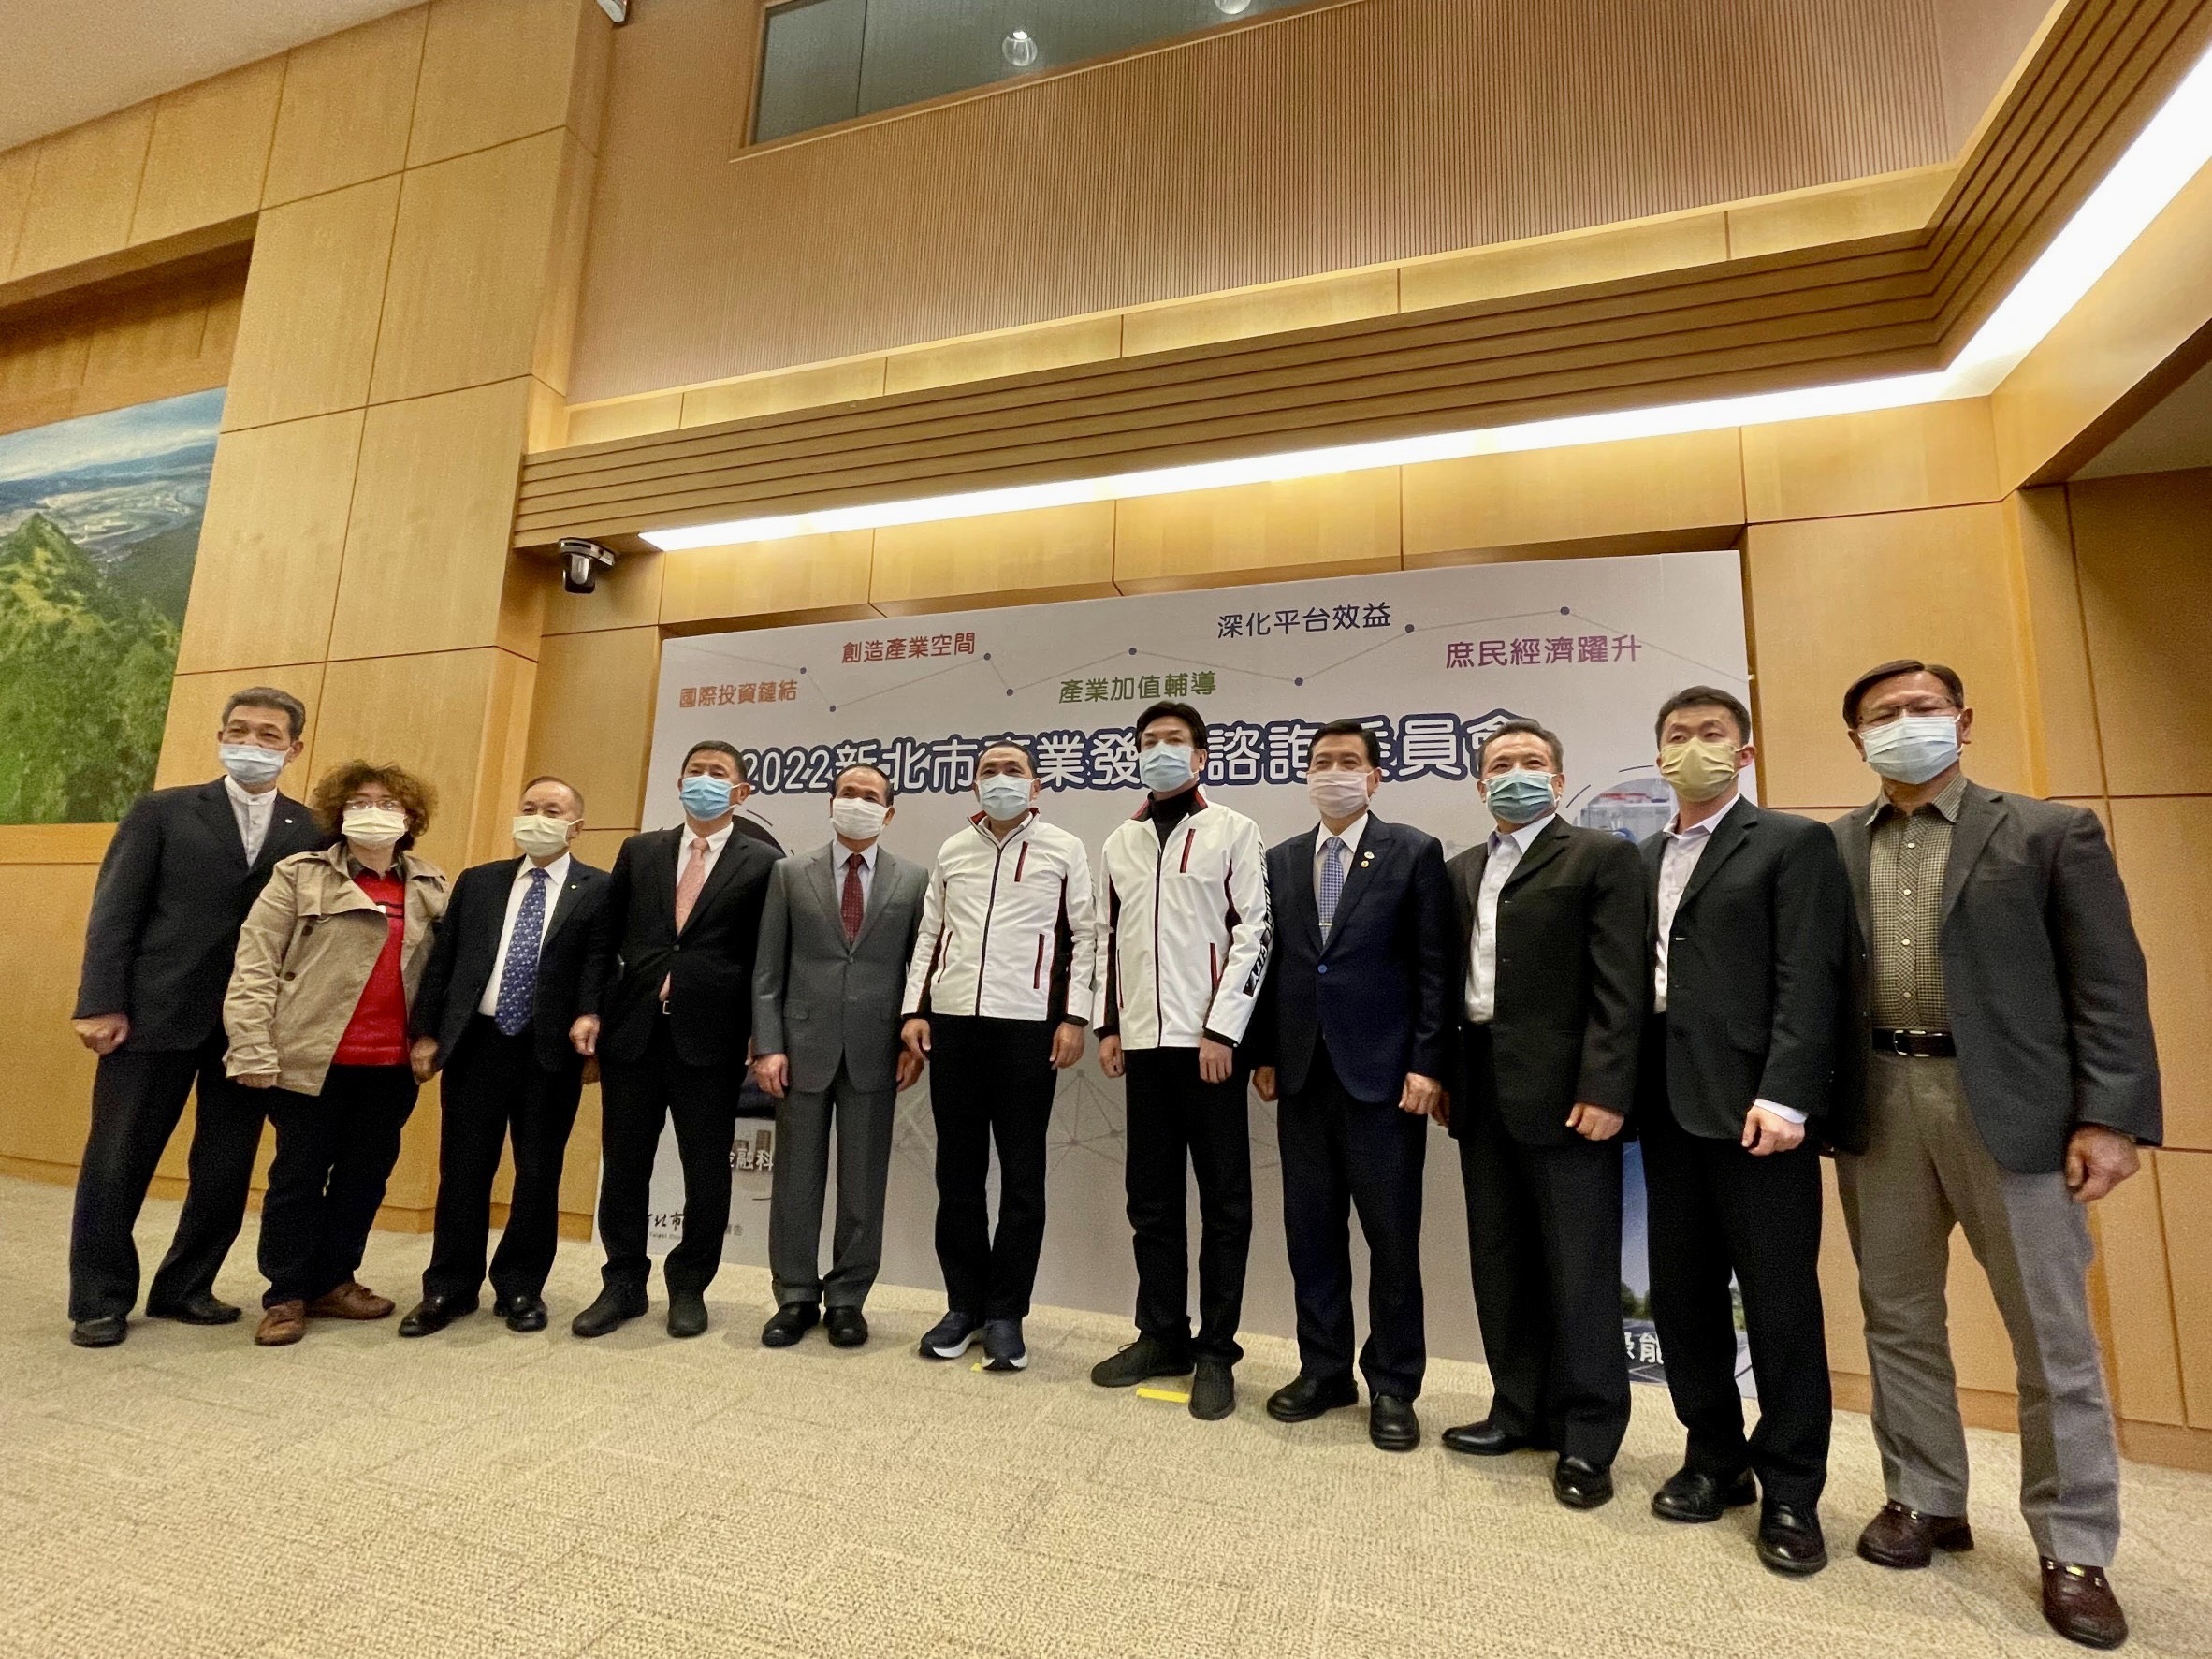 新北市長侯友宜(左六)及副市長劉和然(左七)與工商領袖代表合影